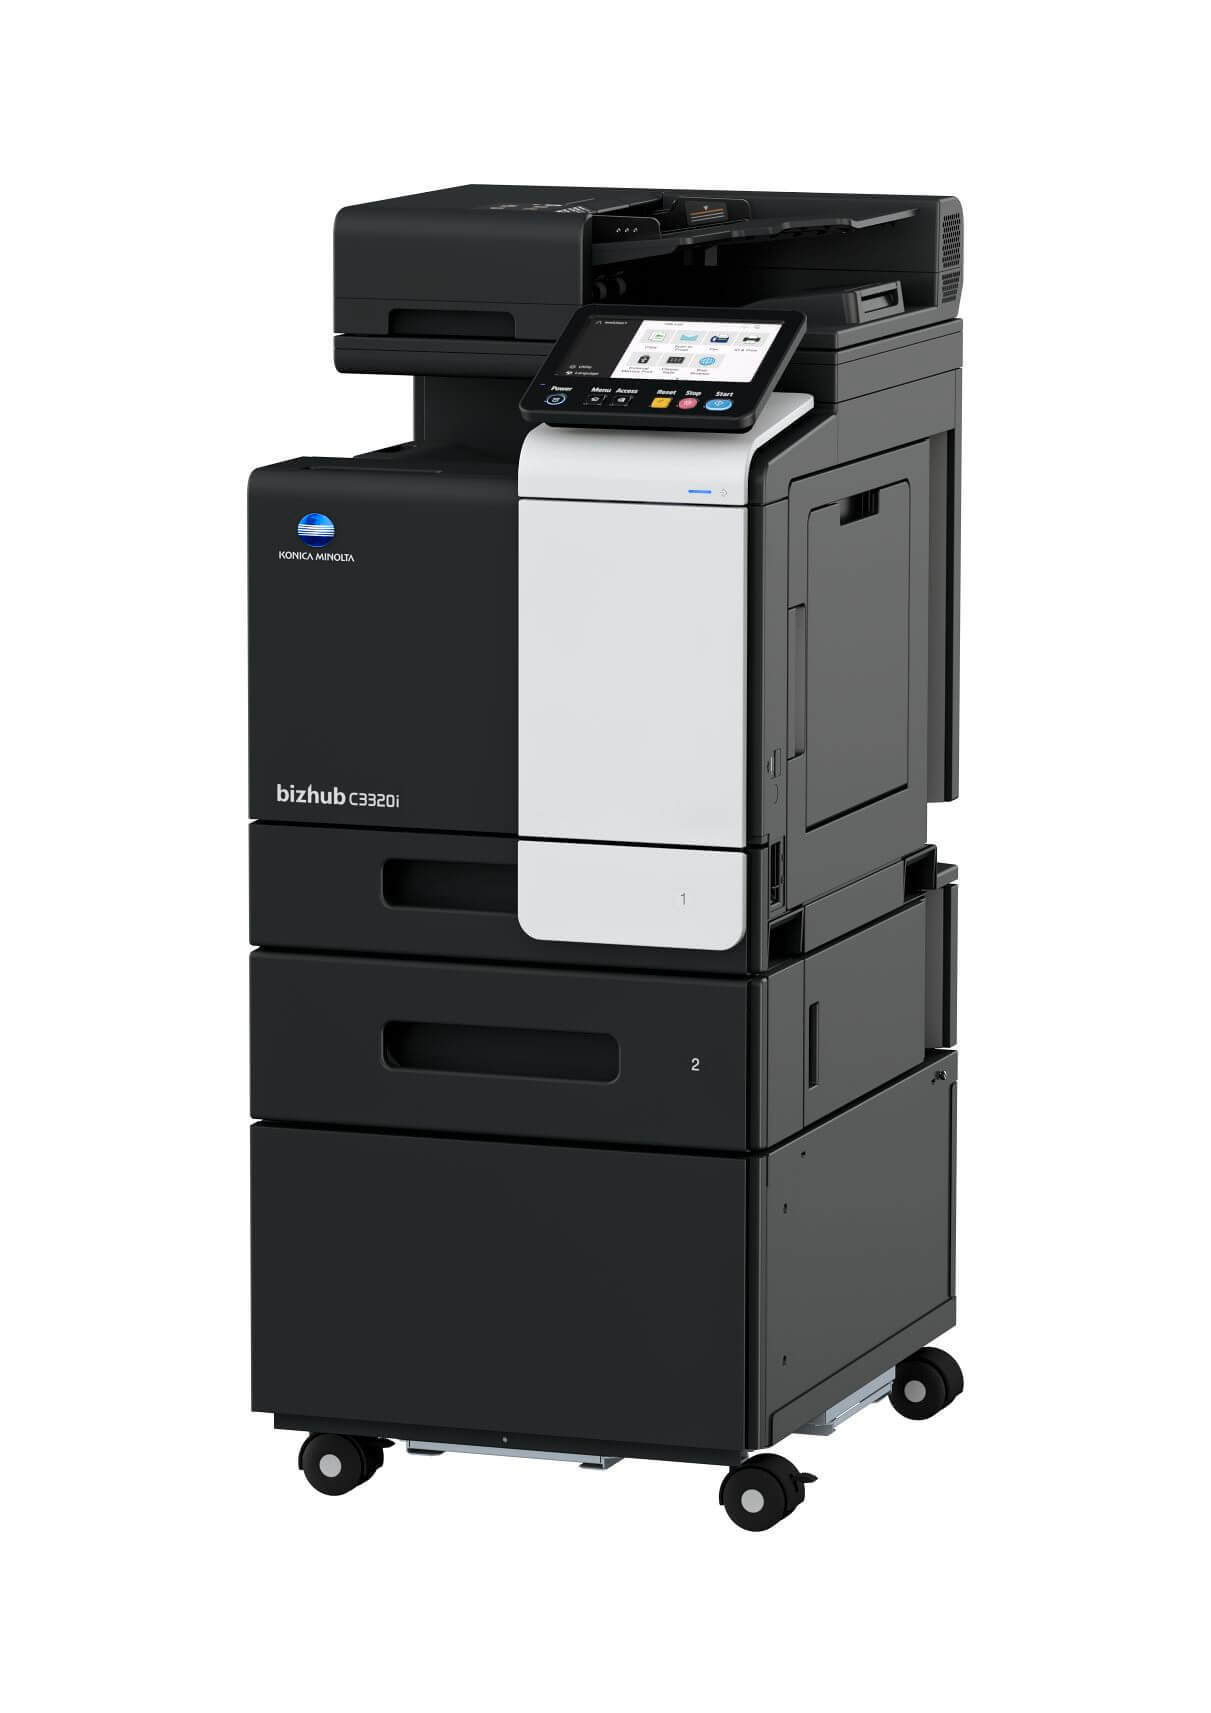 Večfunkcijski tiskalnik Konica Minolta bizhub c3320i serije i-Series